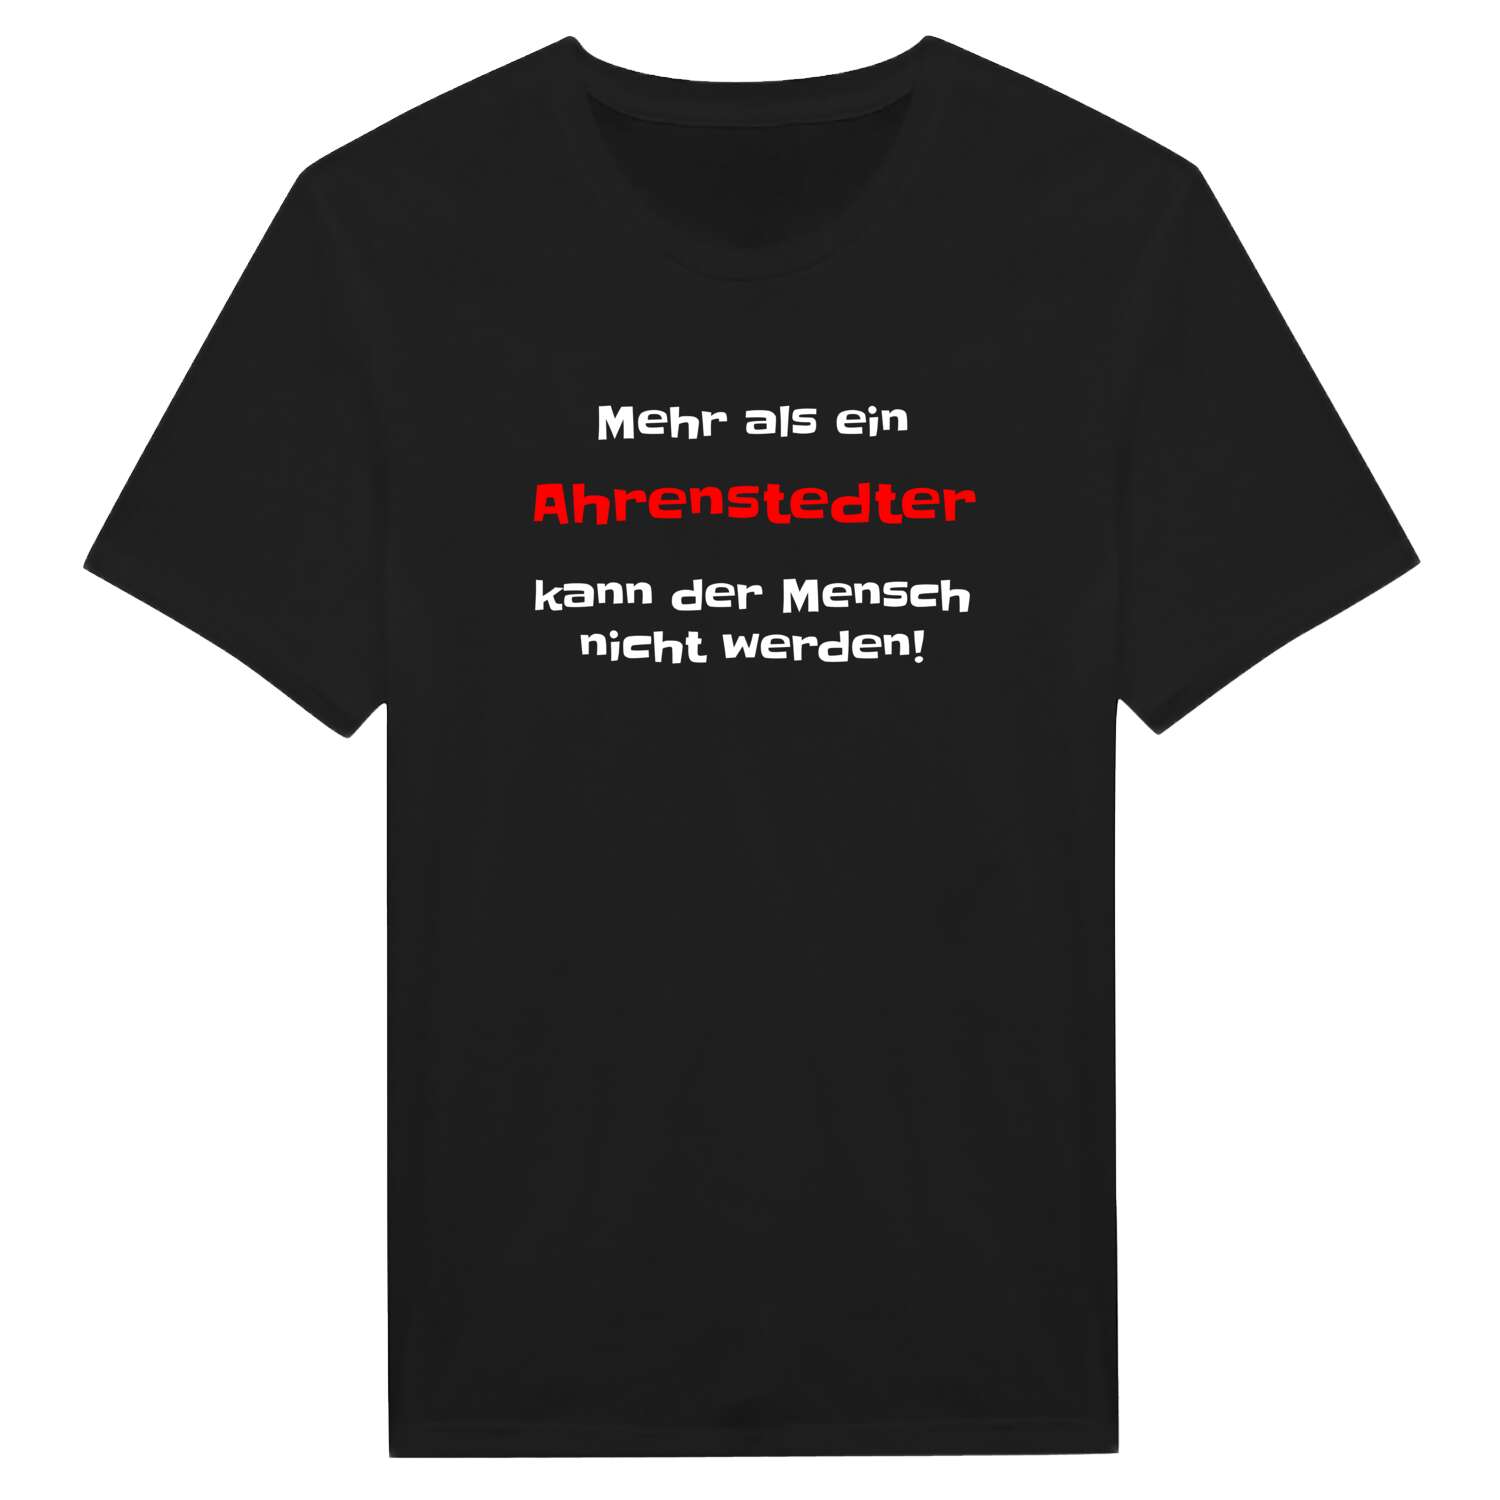 Ahrenstedt T-Shirt »Mehr als ein«